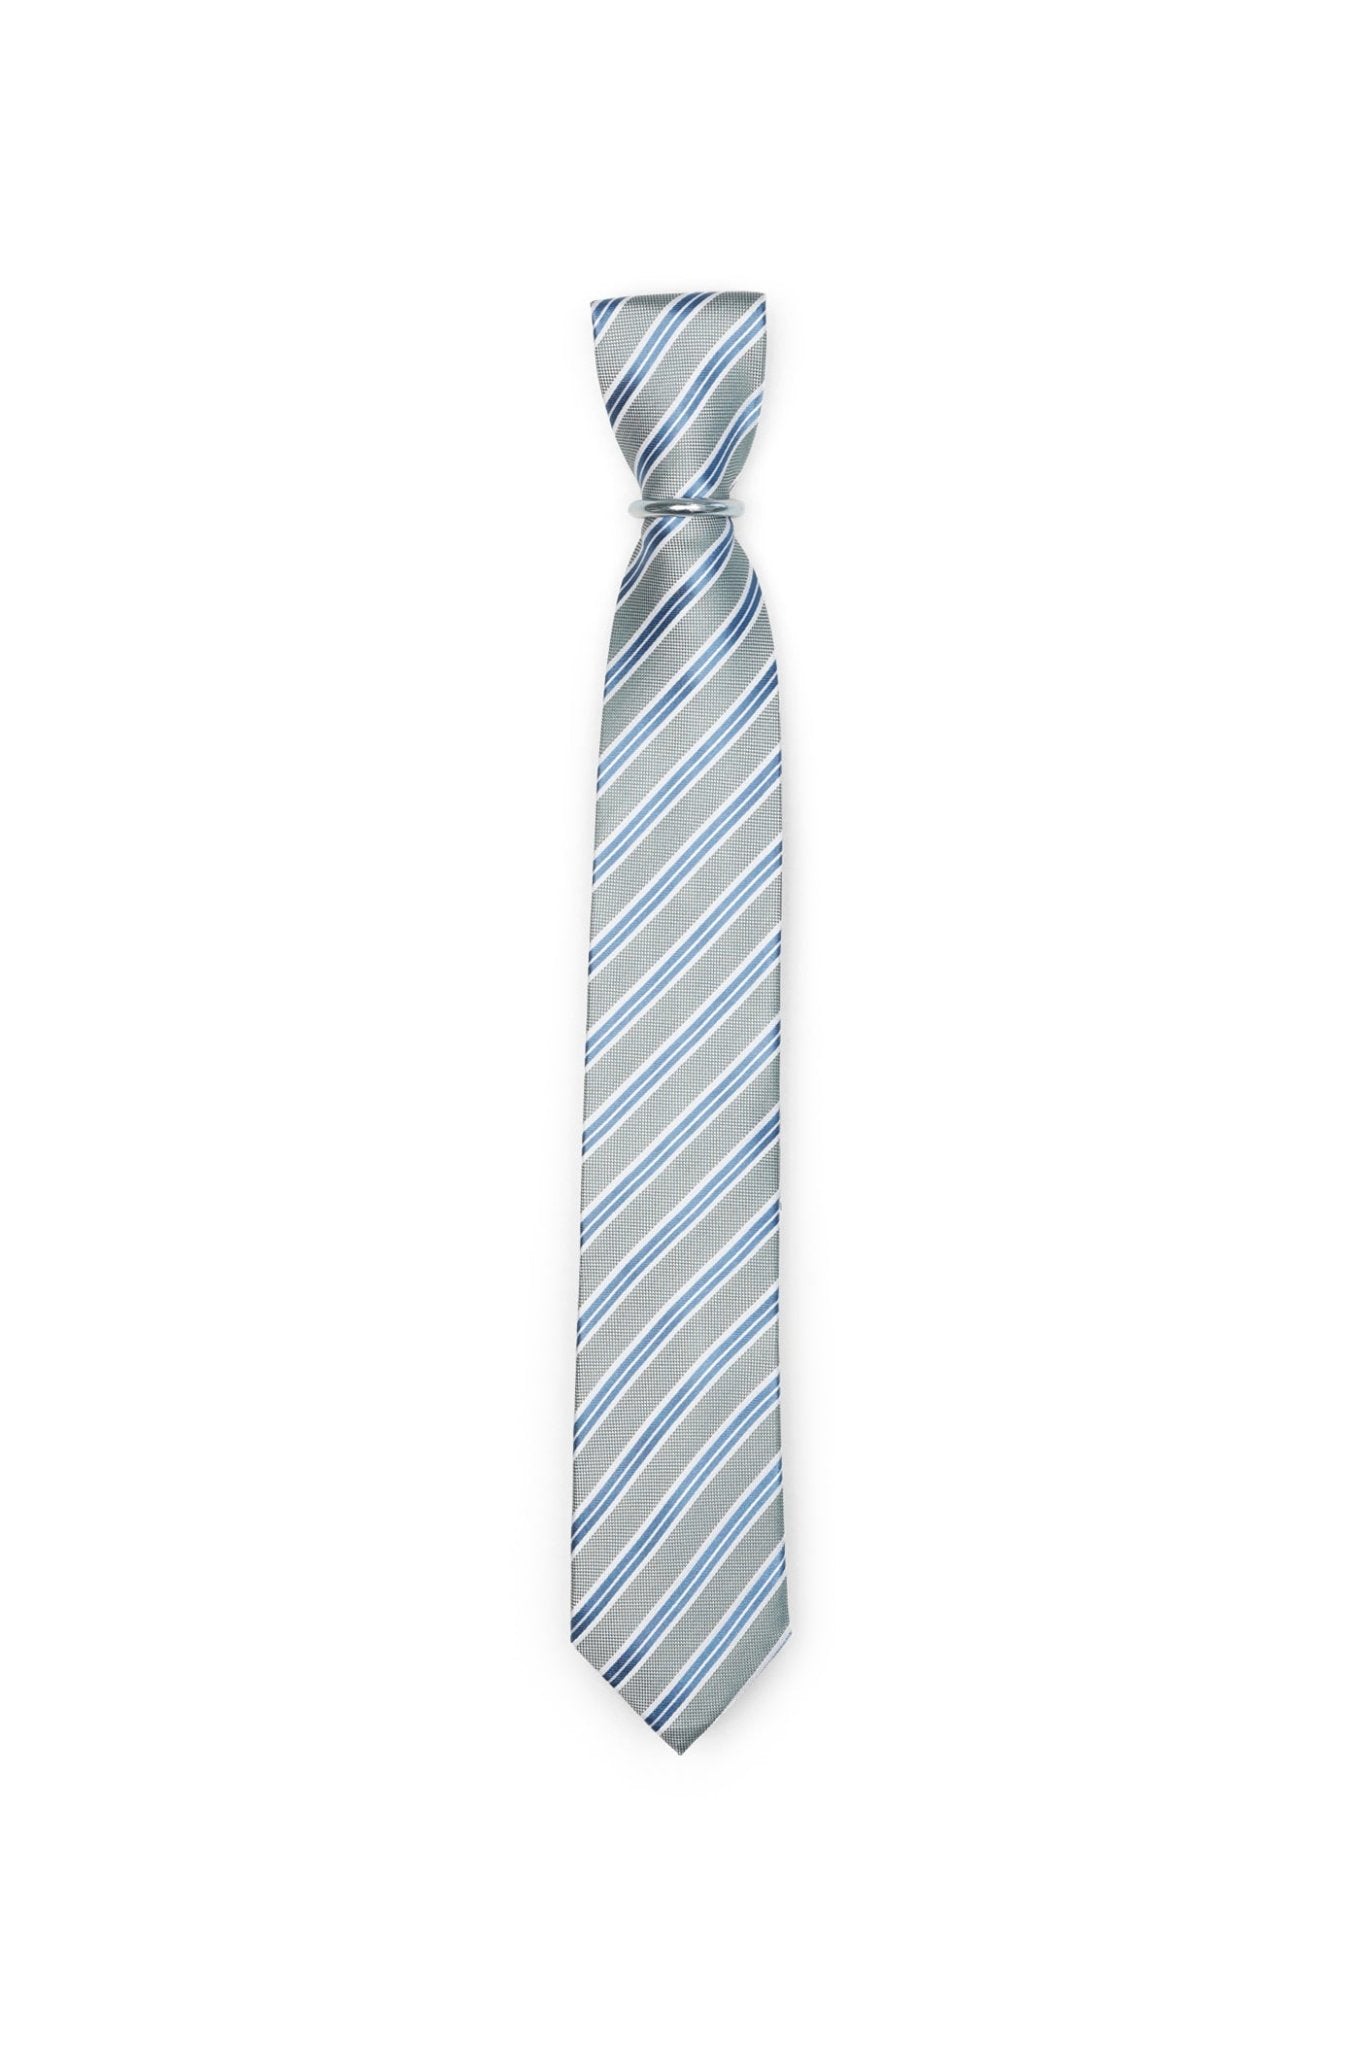 Krawatte mit Streifen - Grün - REAL GUYS